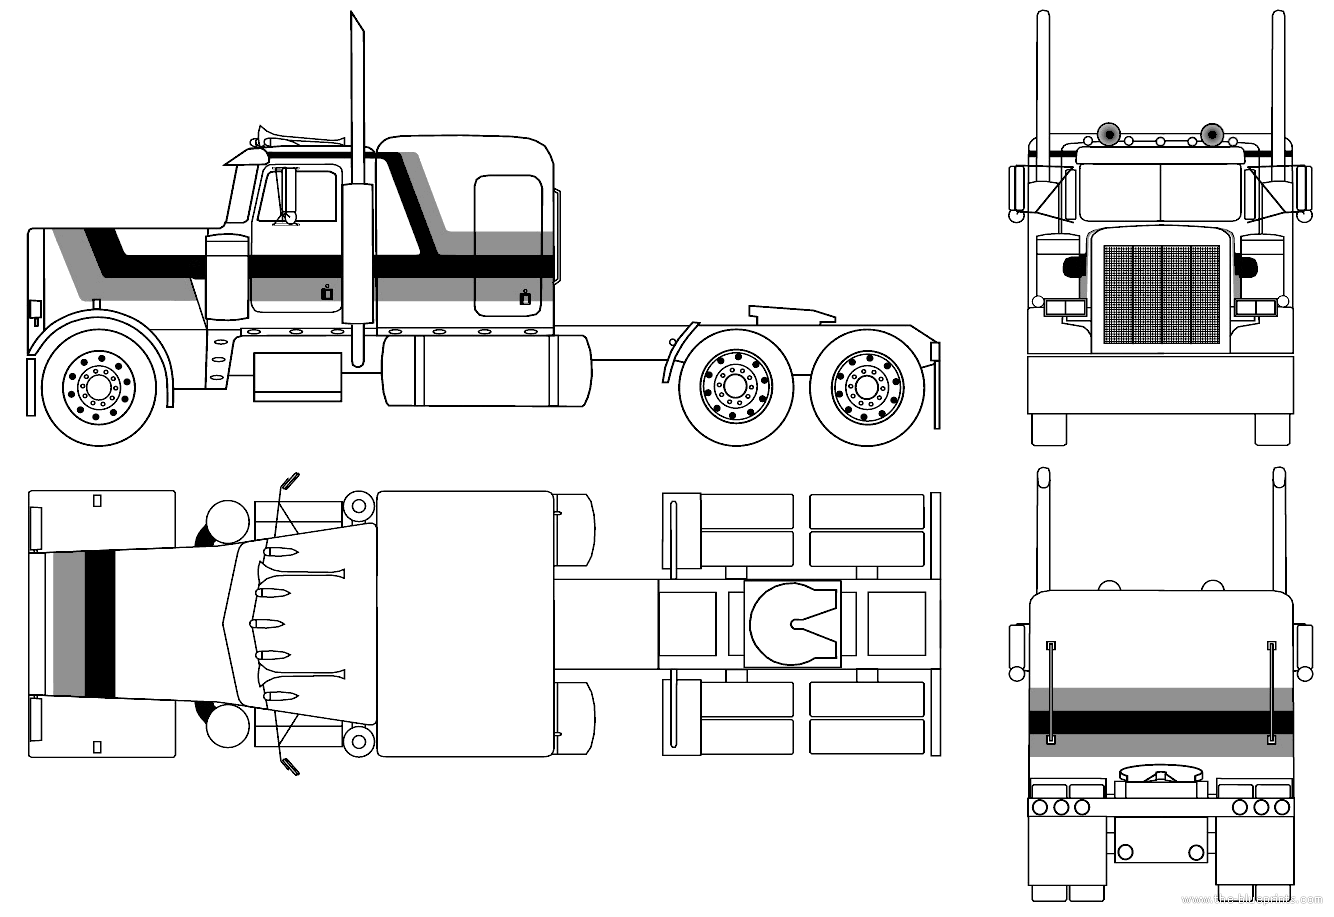 peterbilt truck drawings